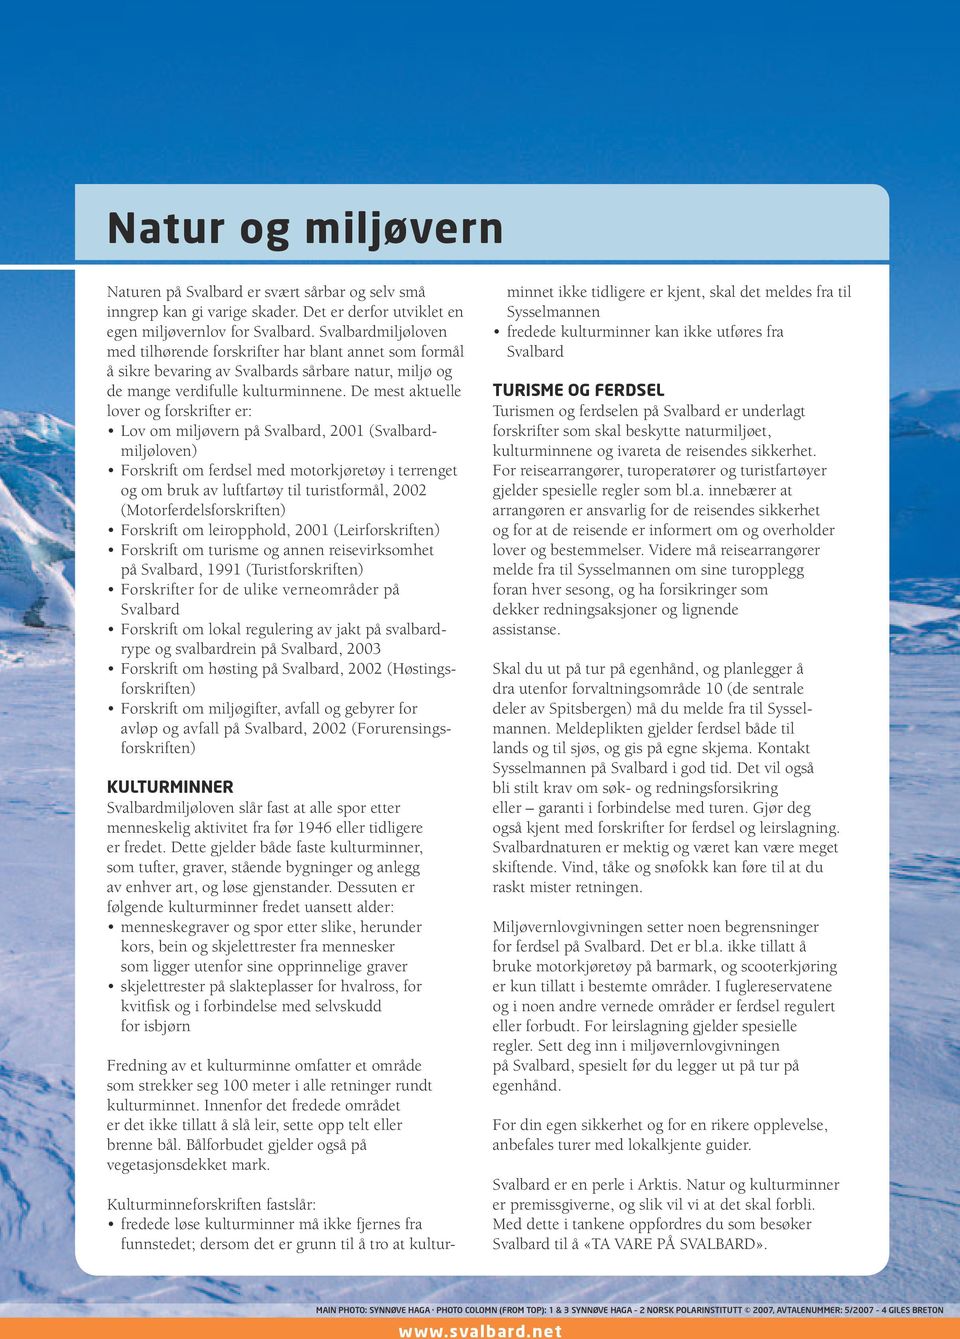 De mest aktuelle lover og forskrifter er: Lov om miljøvern på Svalbard, 2001 (Svalbardmiljøloven) Forskrift om ferdsel med motorkjøretøy i terrenget og om bruk av luftfartøy til turistformål, 2002